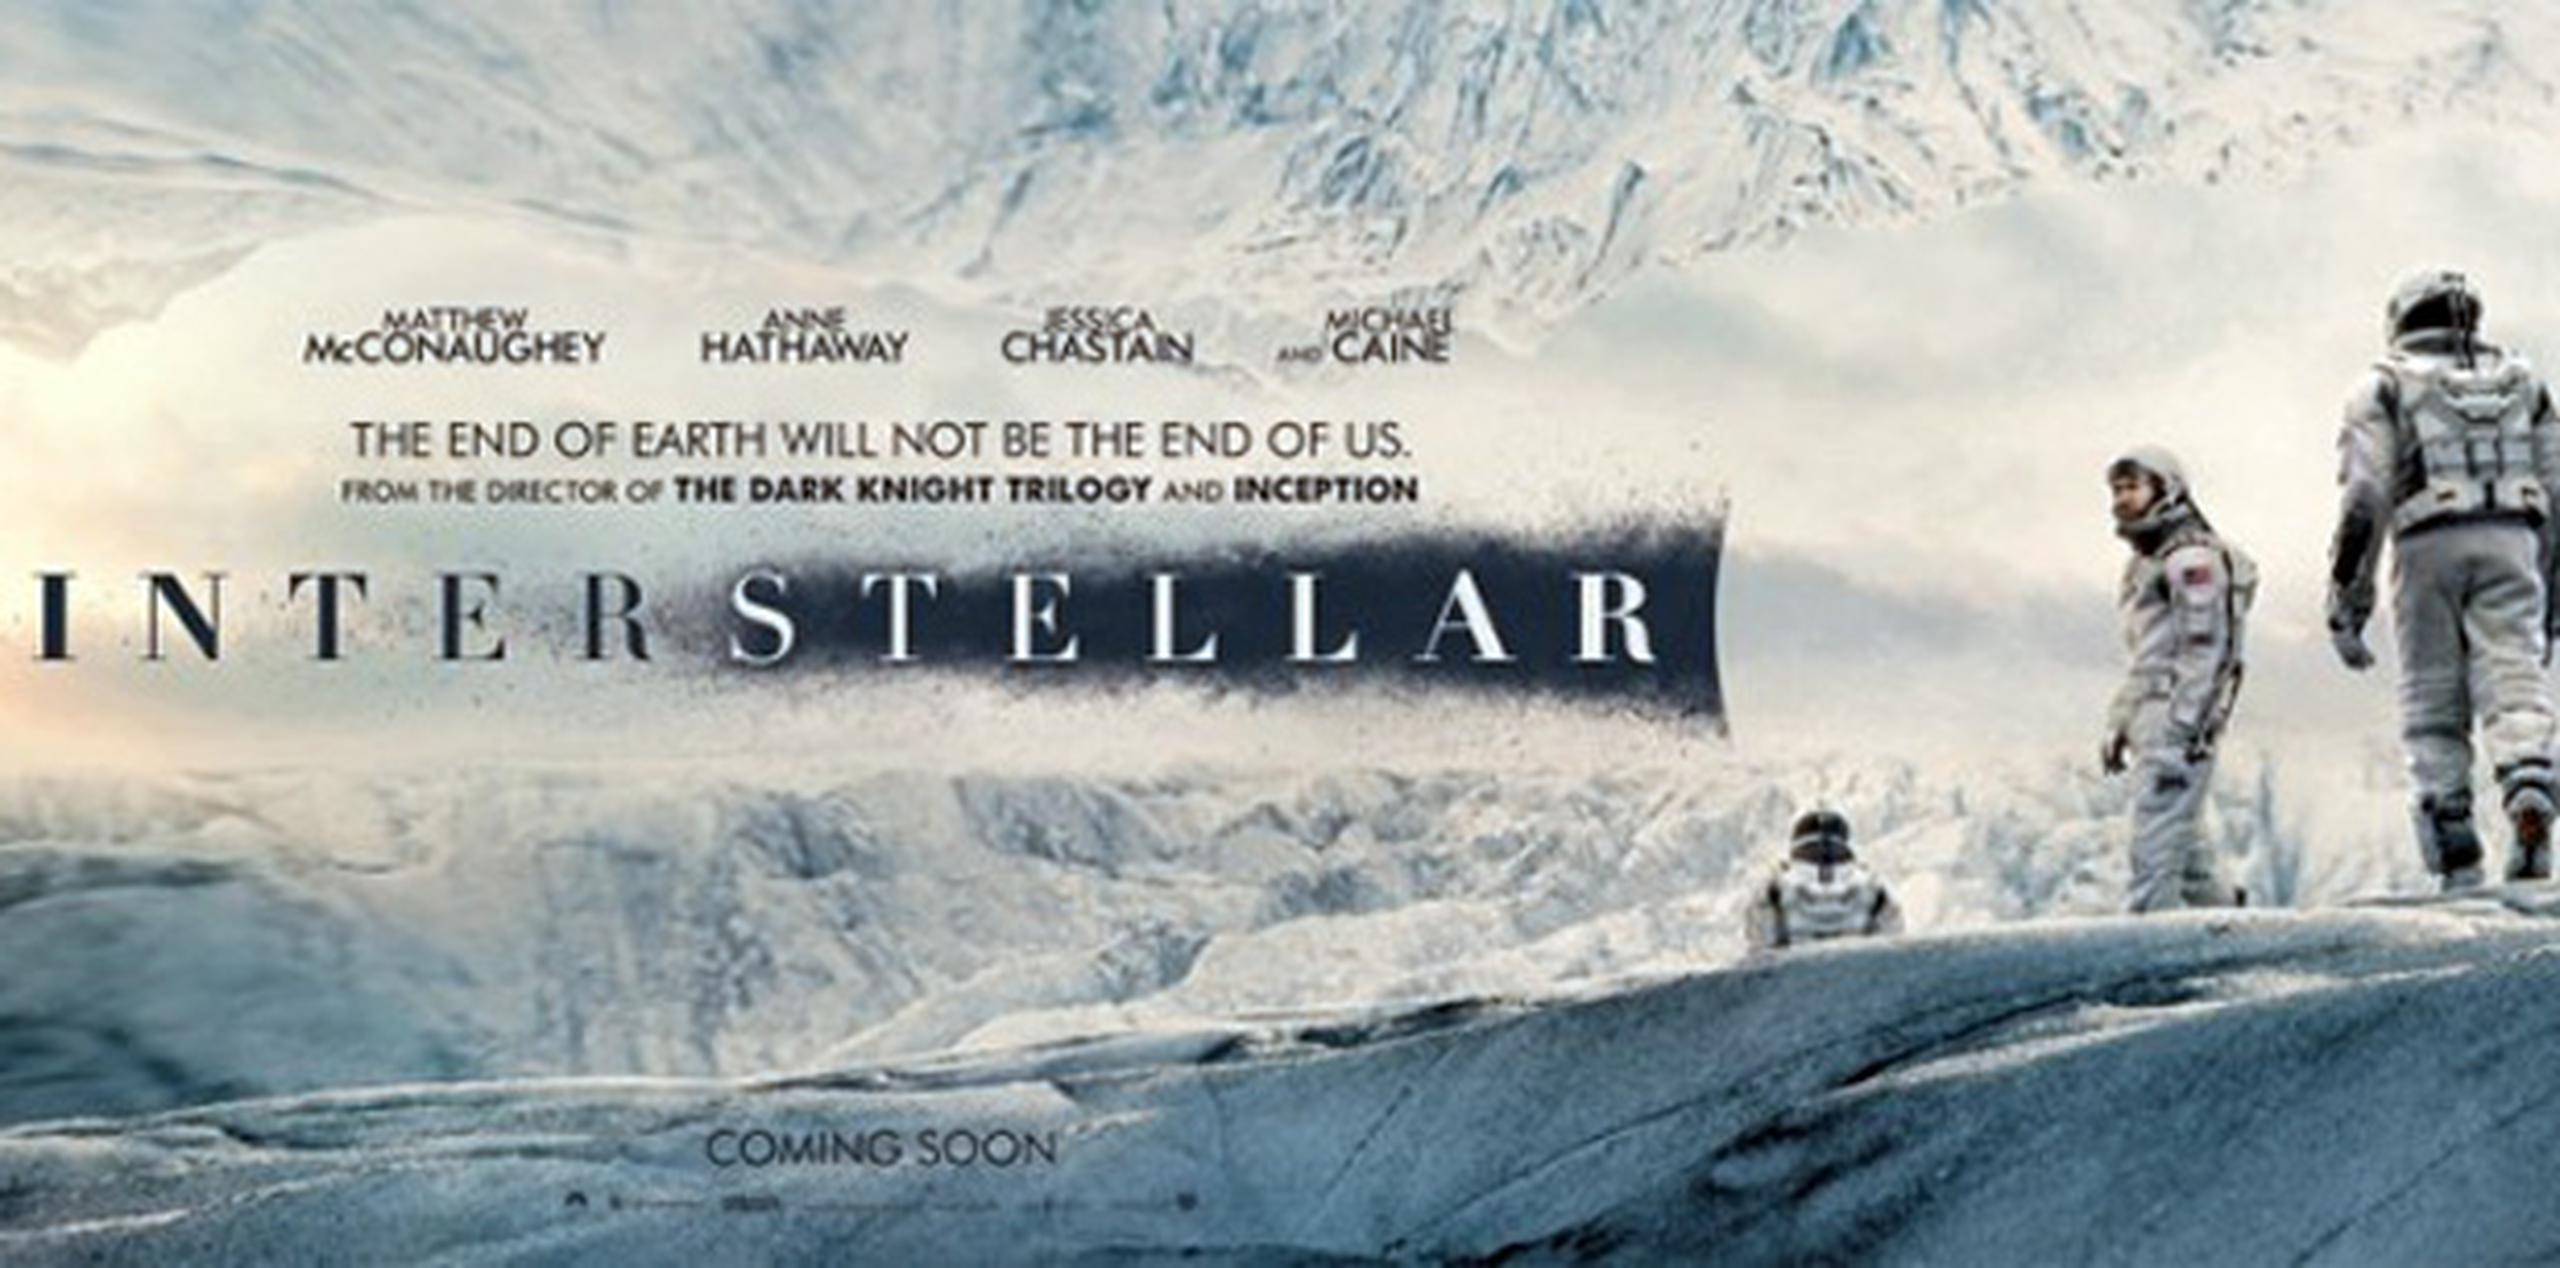 El estreno de Interstellar fue pospuesto 7 semenas en Puerto Rico por Paramount Pictures.